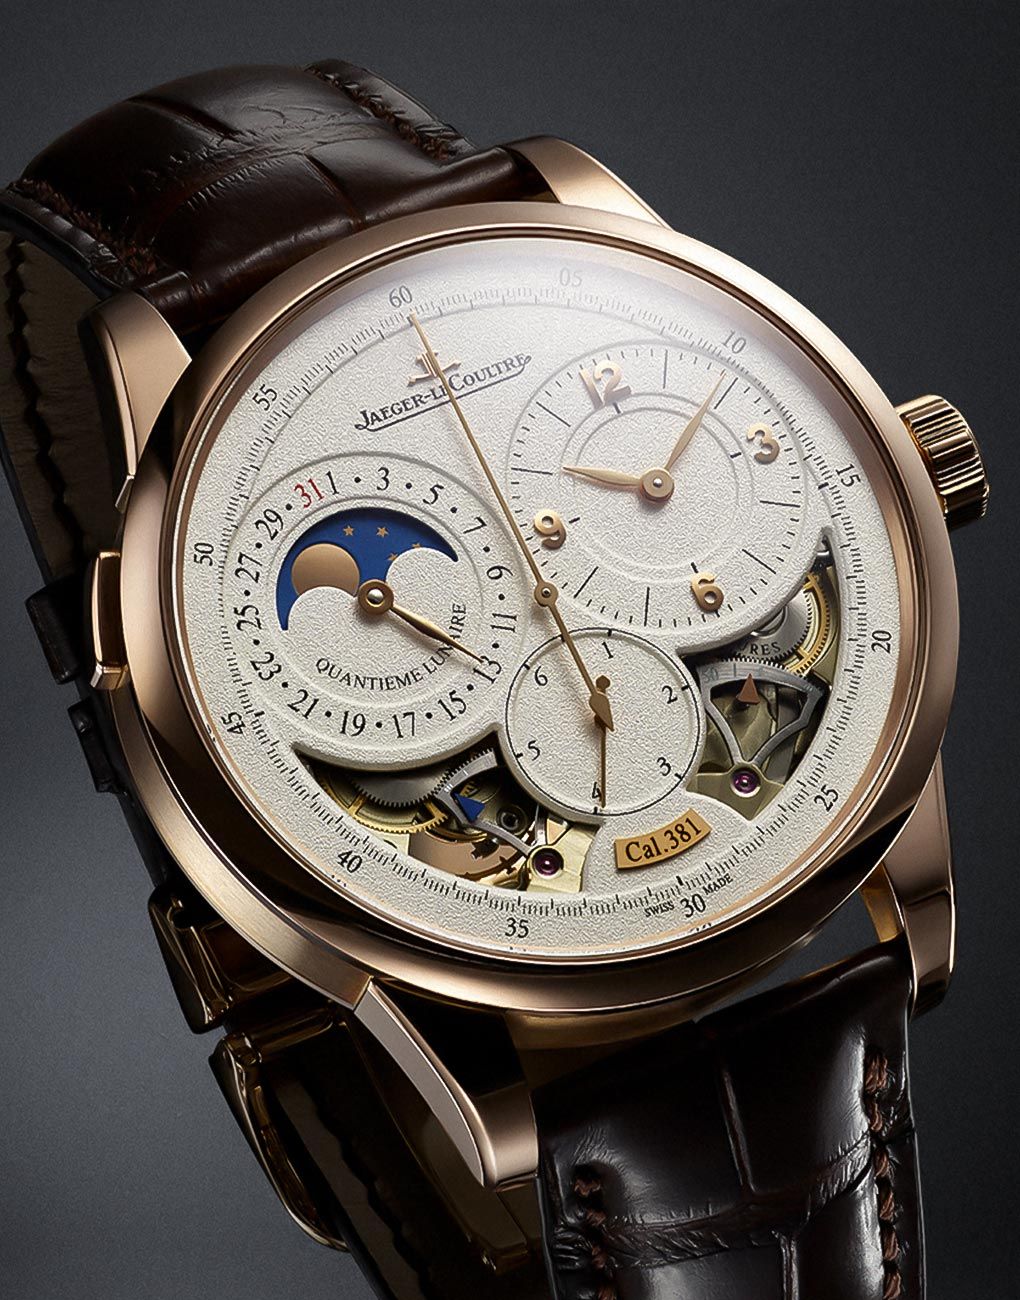 Presenting The Jaeger-LeCoultre Duomètre Quantième Lunaire Timepiece